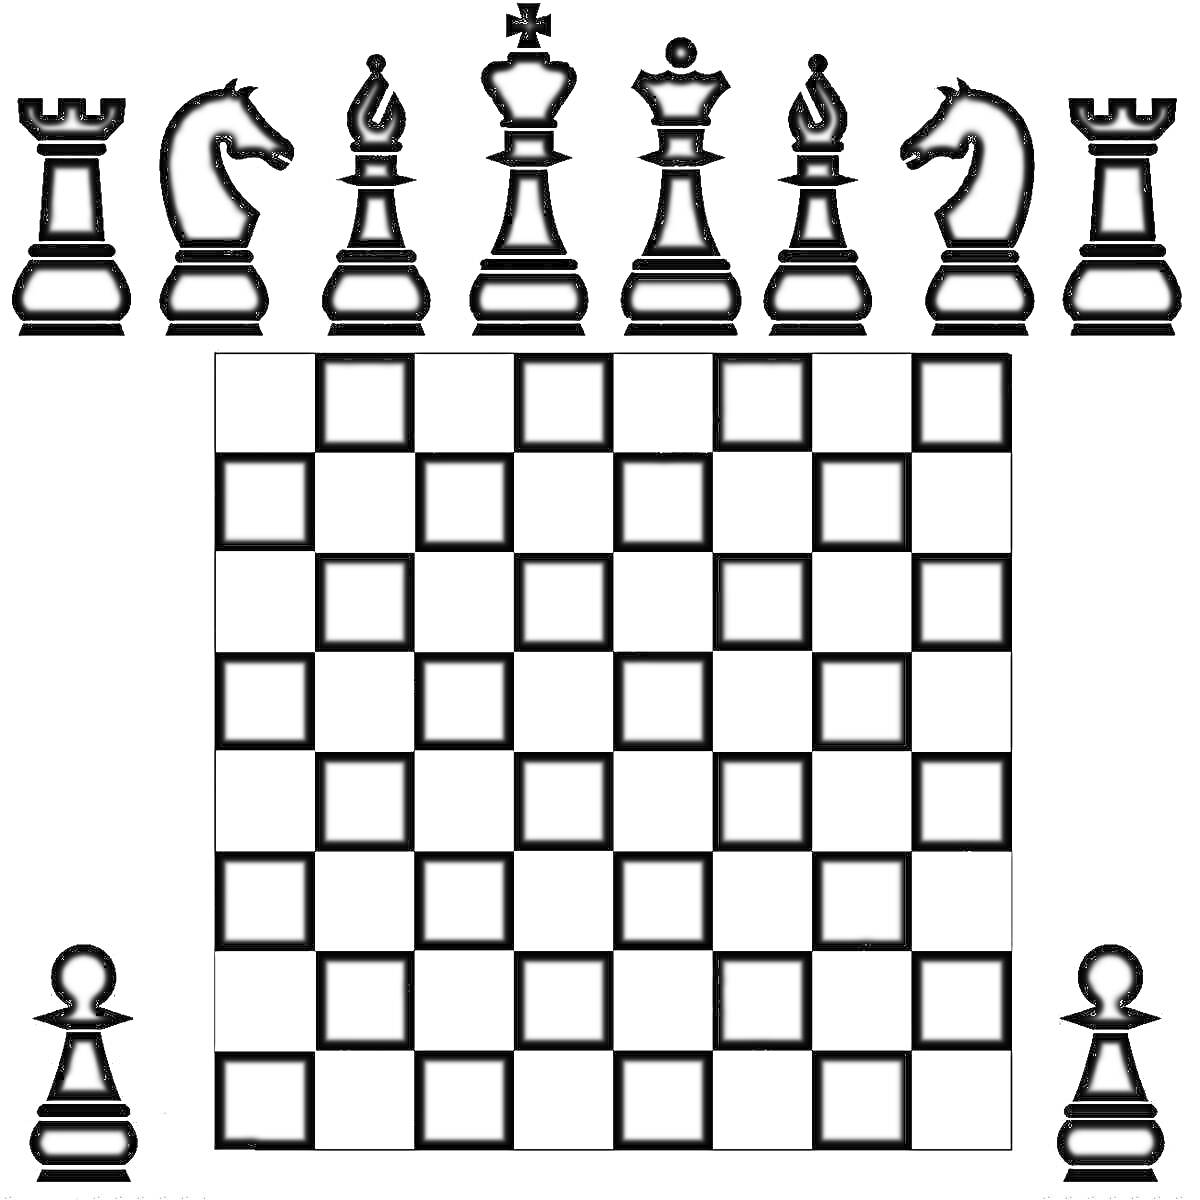 Шахматная доска с фигурами: ладья, конь, слон, ферзь, король, пешка